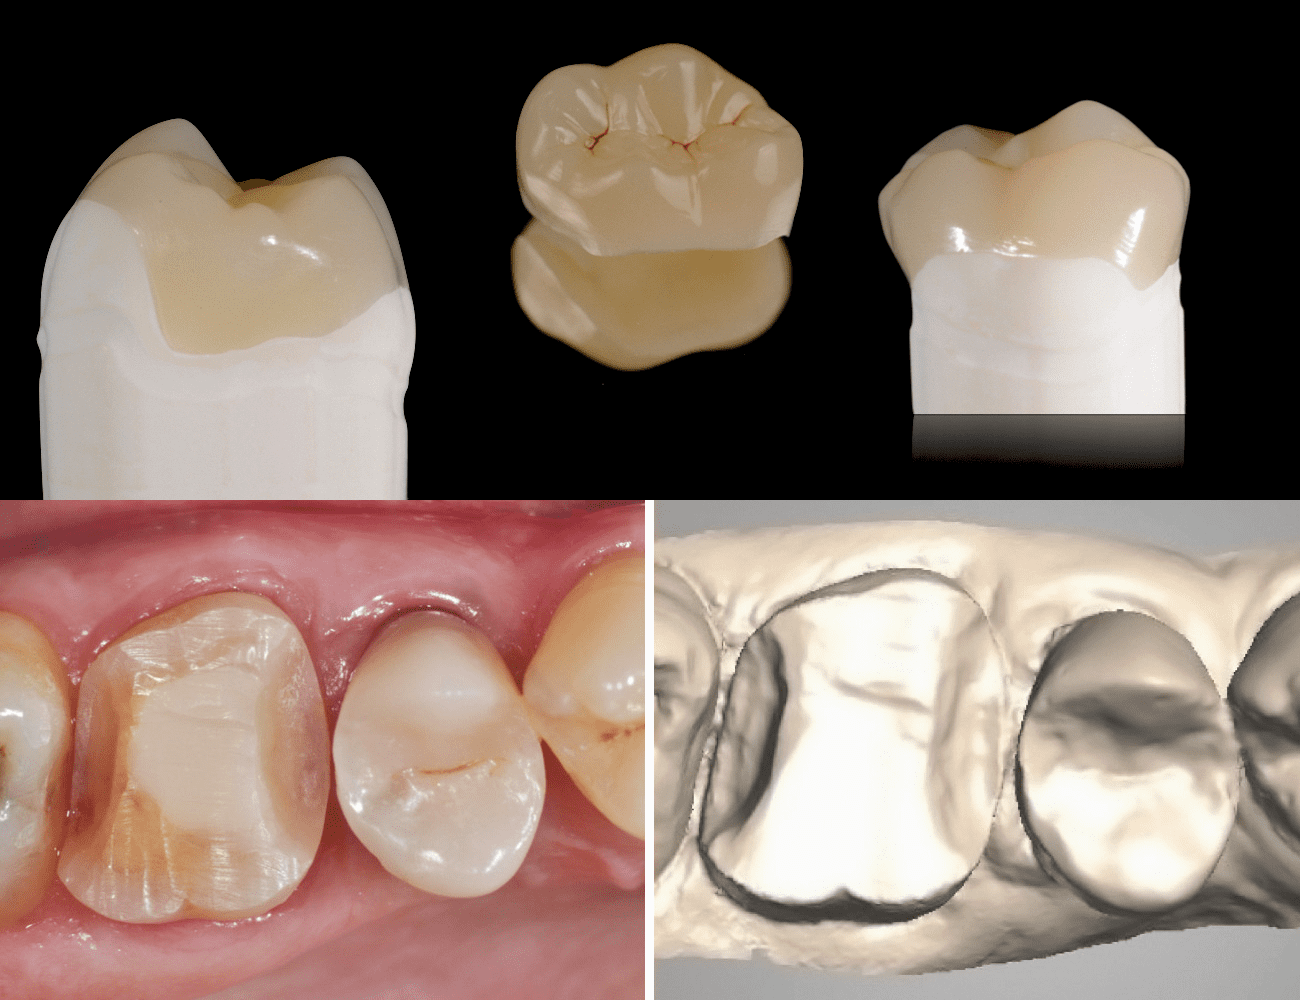 1 / Intarsio rifinito e lucidato 2 / Preparazione dentale e scansione intra-orale Credits: Dr. G. Ori